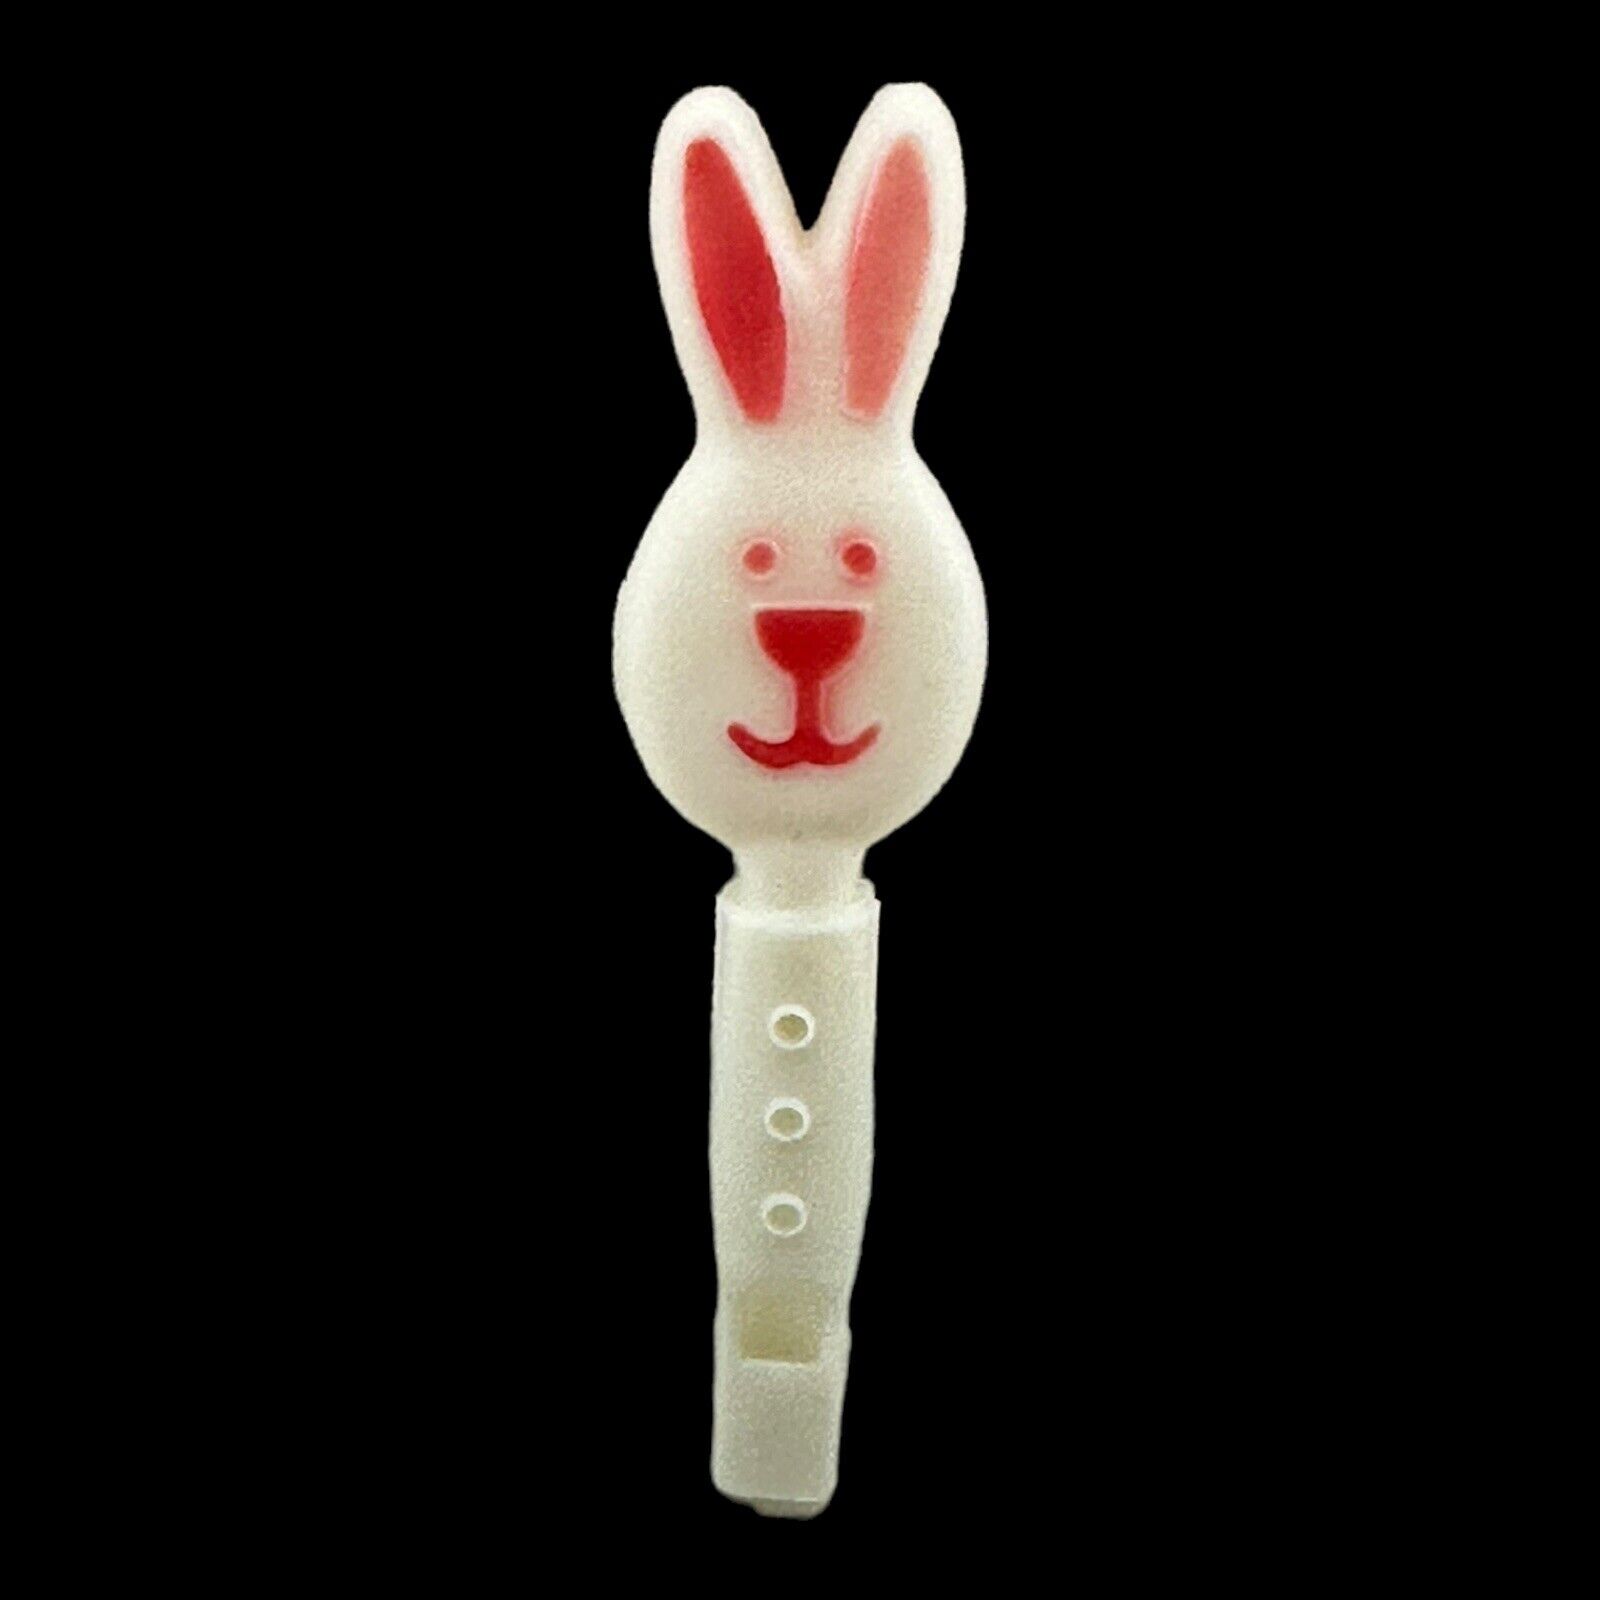 White Easter Bunny Plastic Whistle Noisemaker 6.75” China 1980s Basket Toy VTG